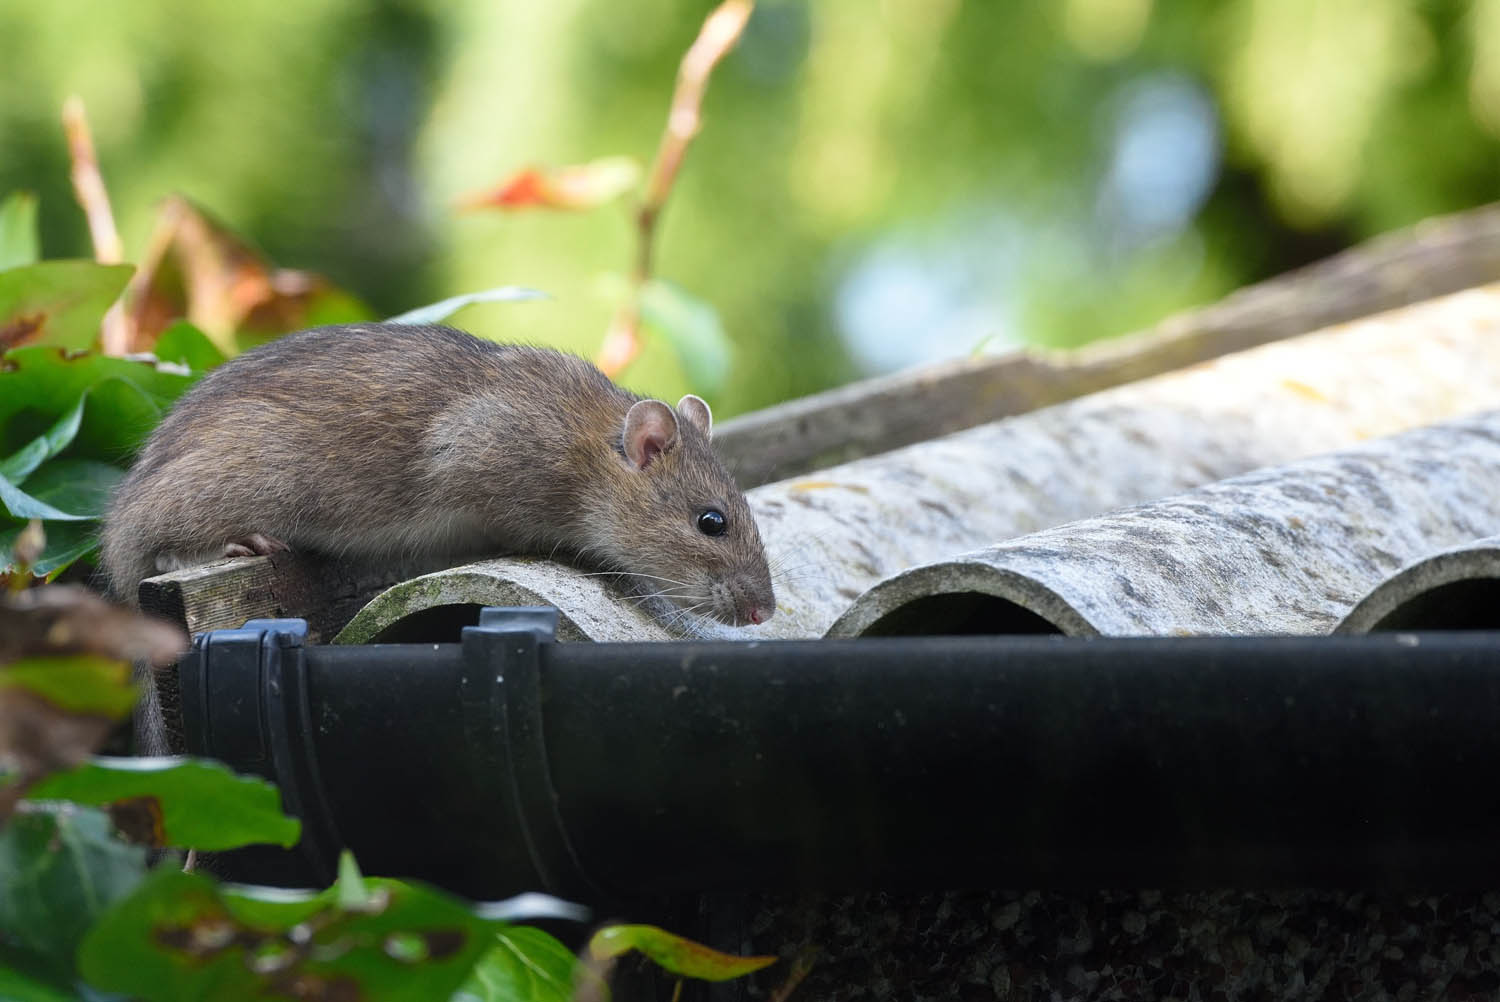 Punaises, souris, rats: Les nuisibles sont parmi nous